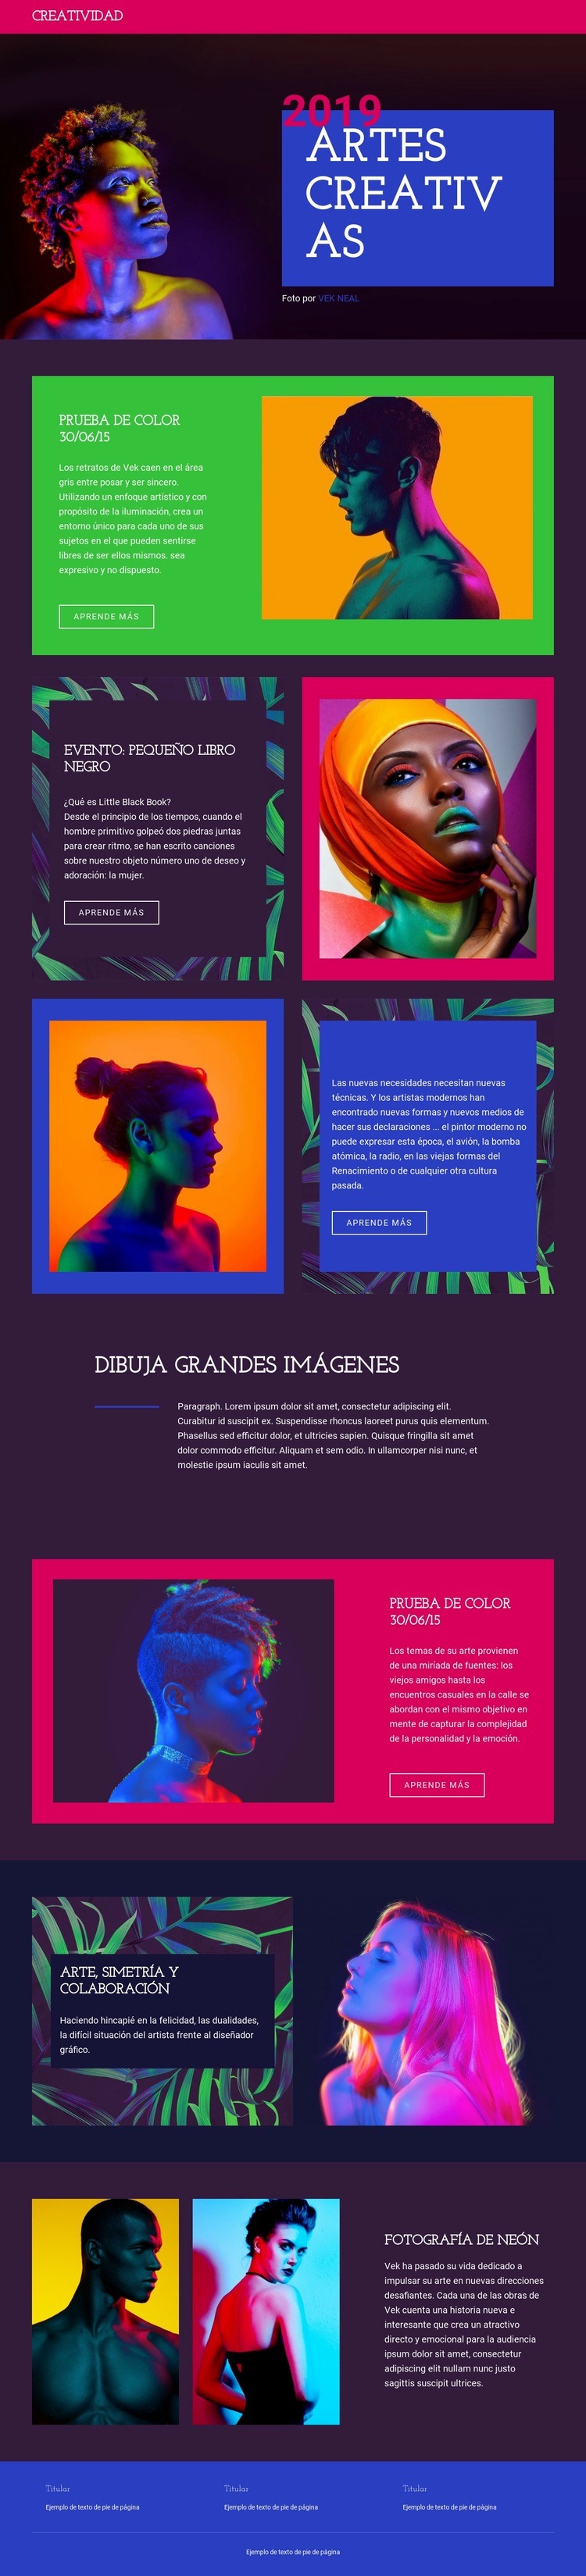 Artes creativas Maqueta de sitio web